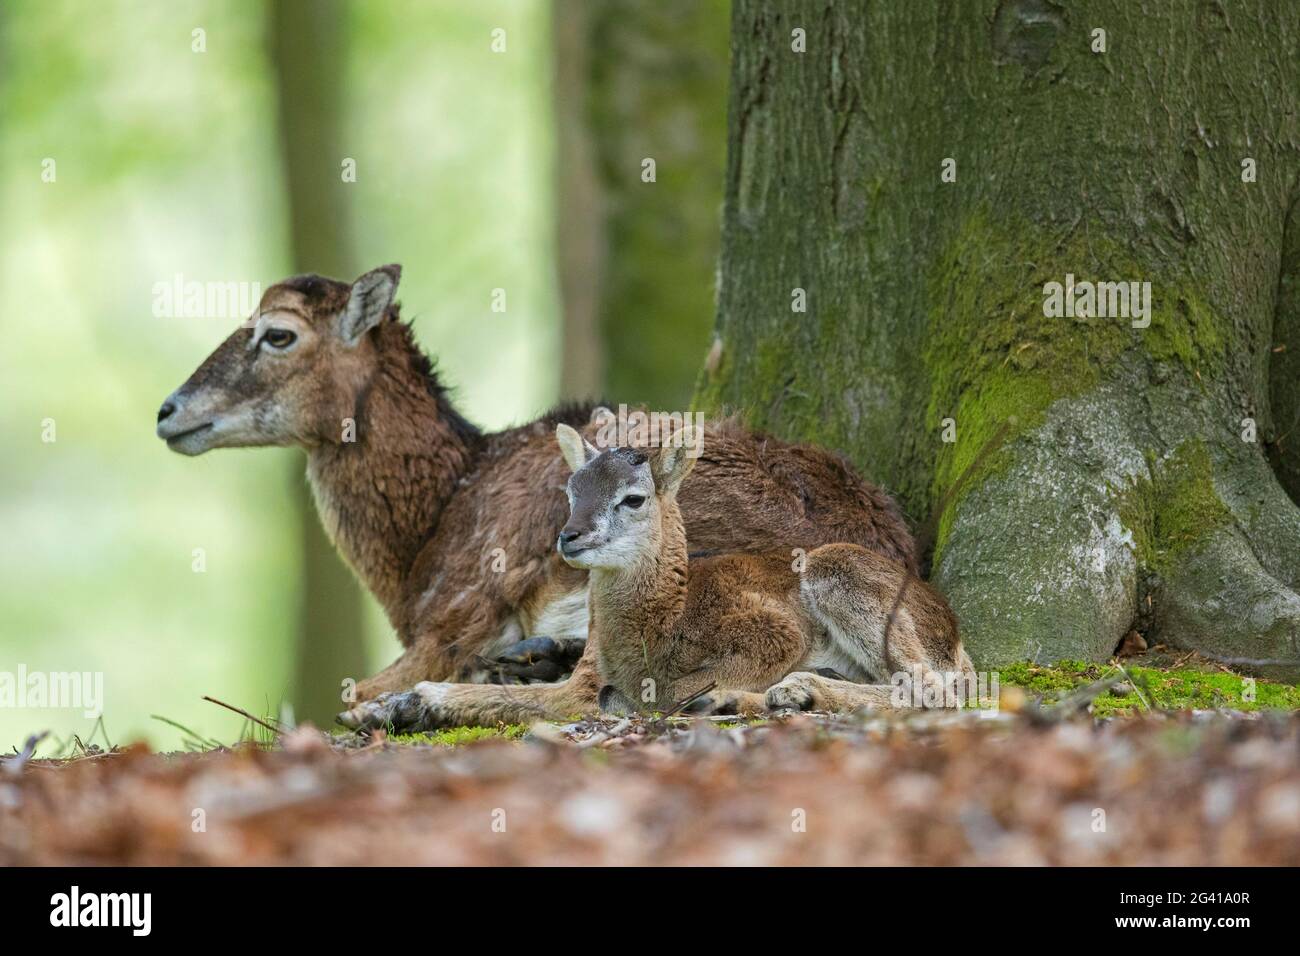 Mouflon européen (Ovis gmelini musimon / Ovis ammon / Ovis orientalis musimon) brebis / femelle avec agneau reposant en forêt au printemps Banque D'Images